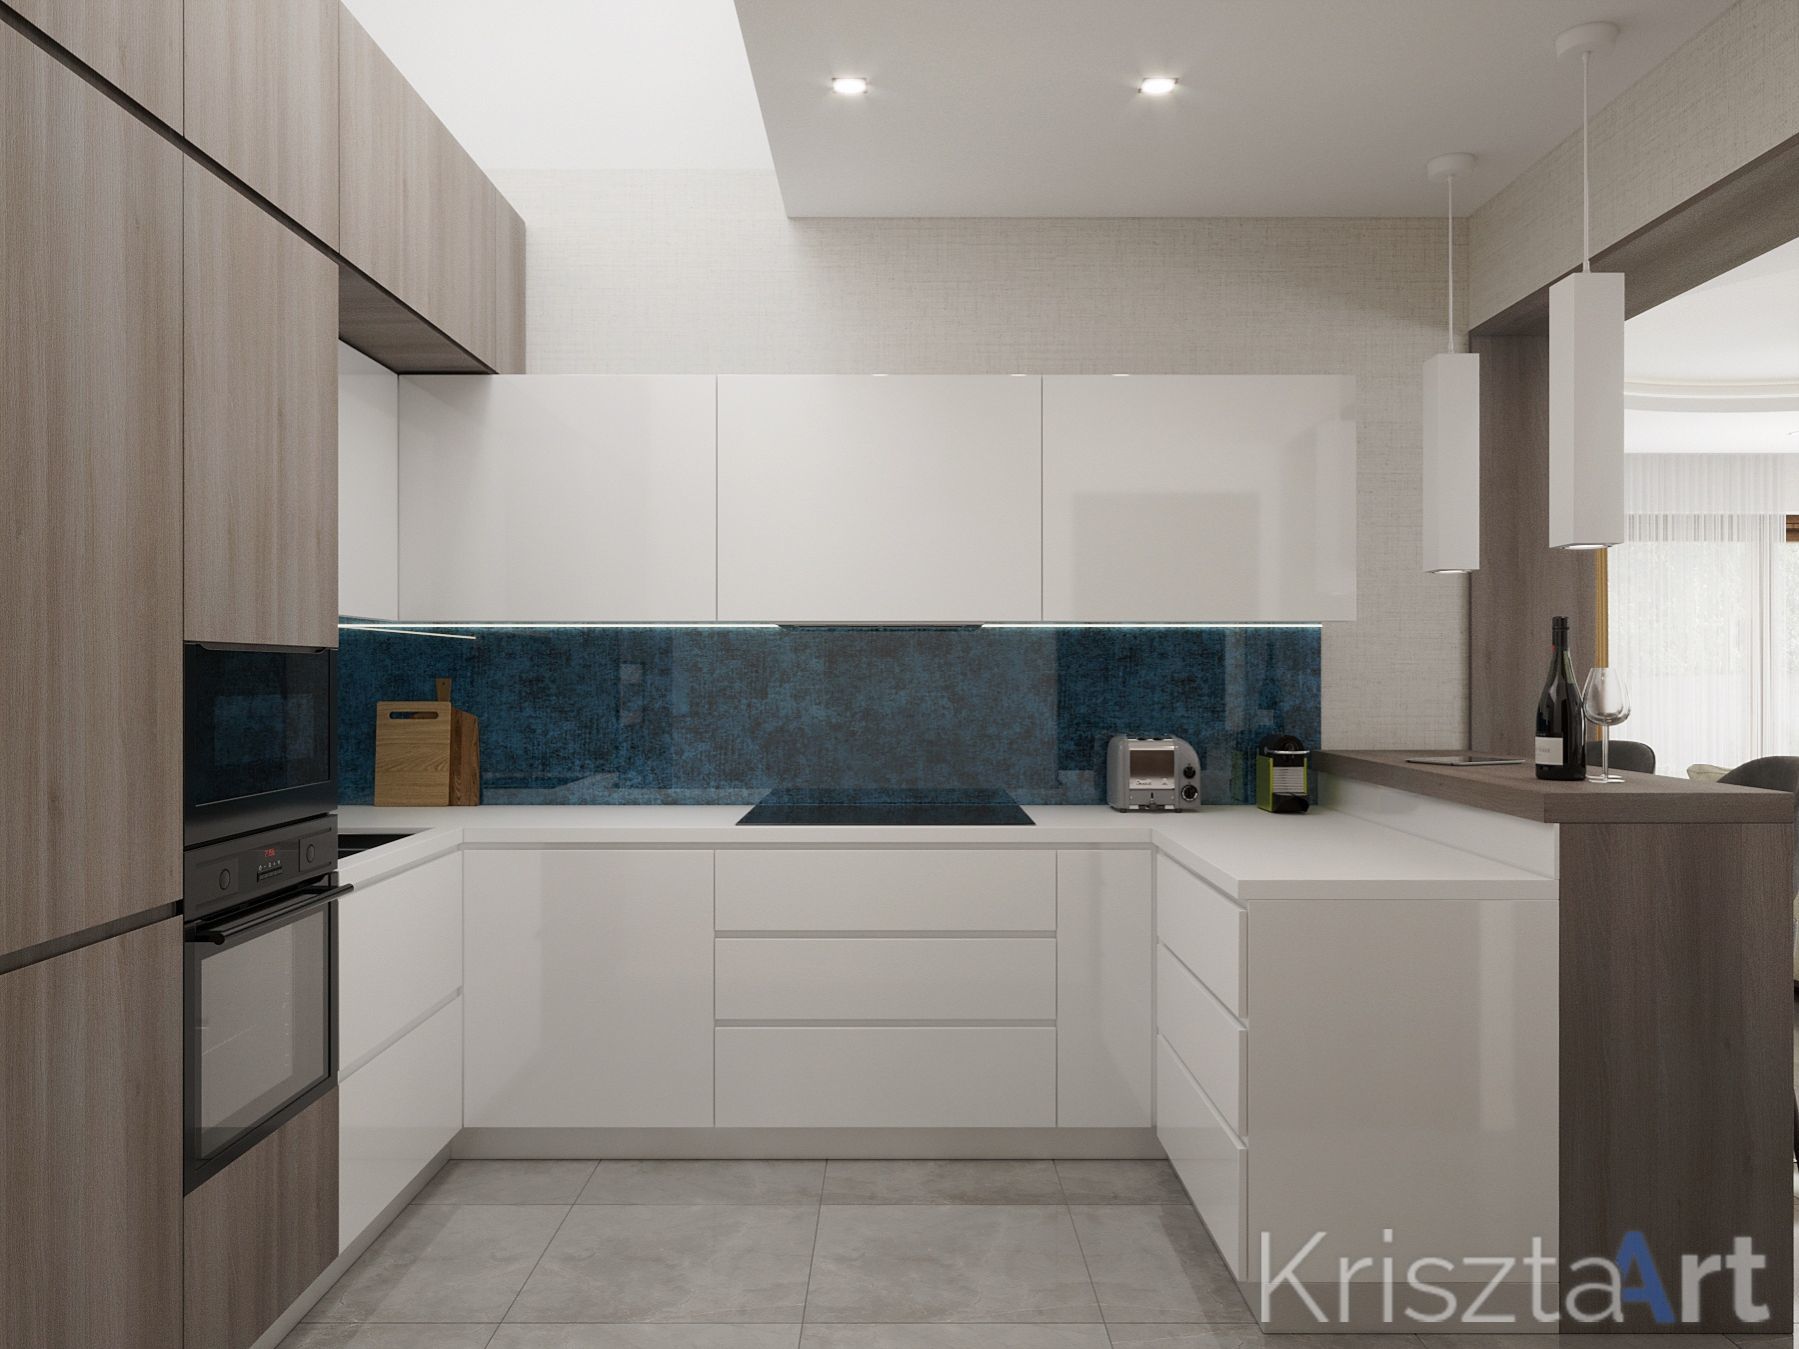 Látványterv: A konyhafal még a kék színekben